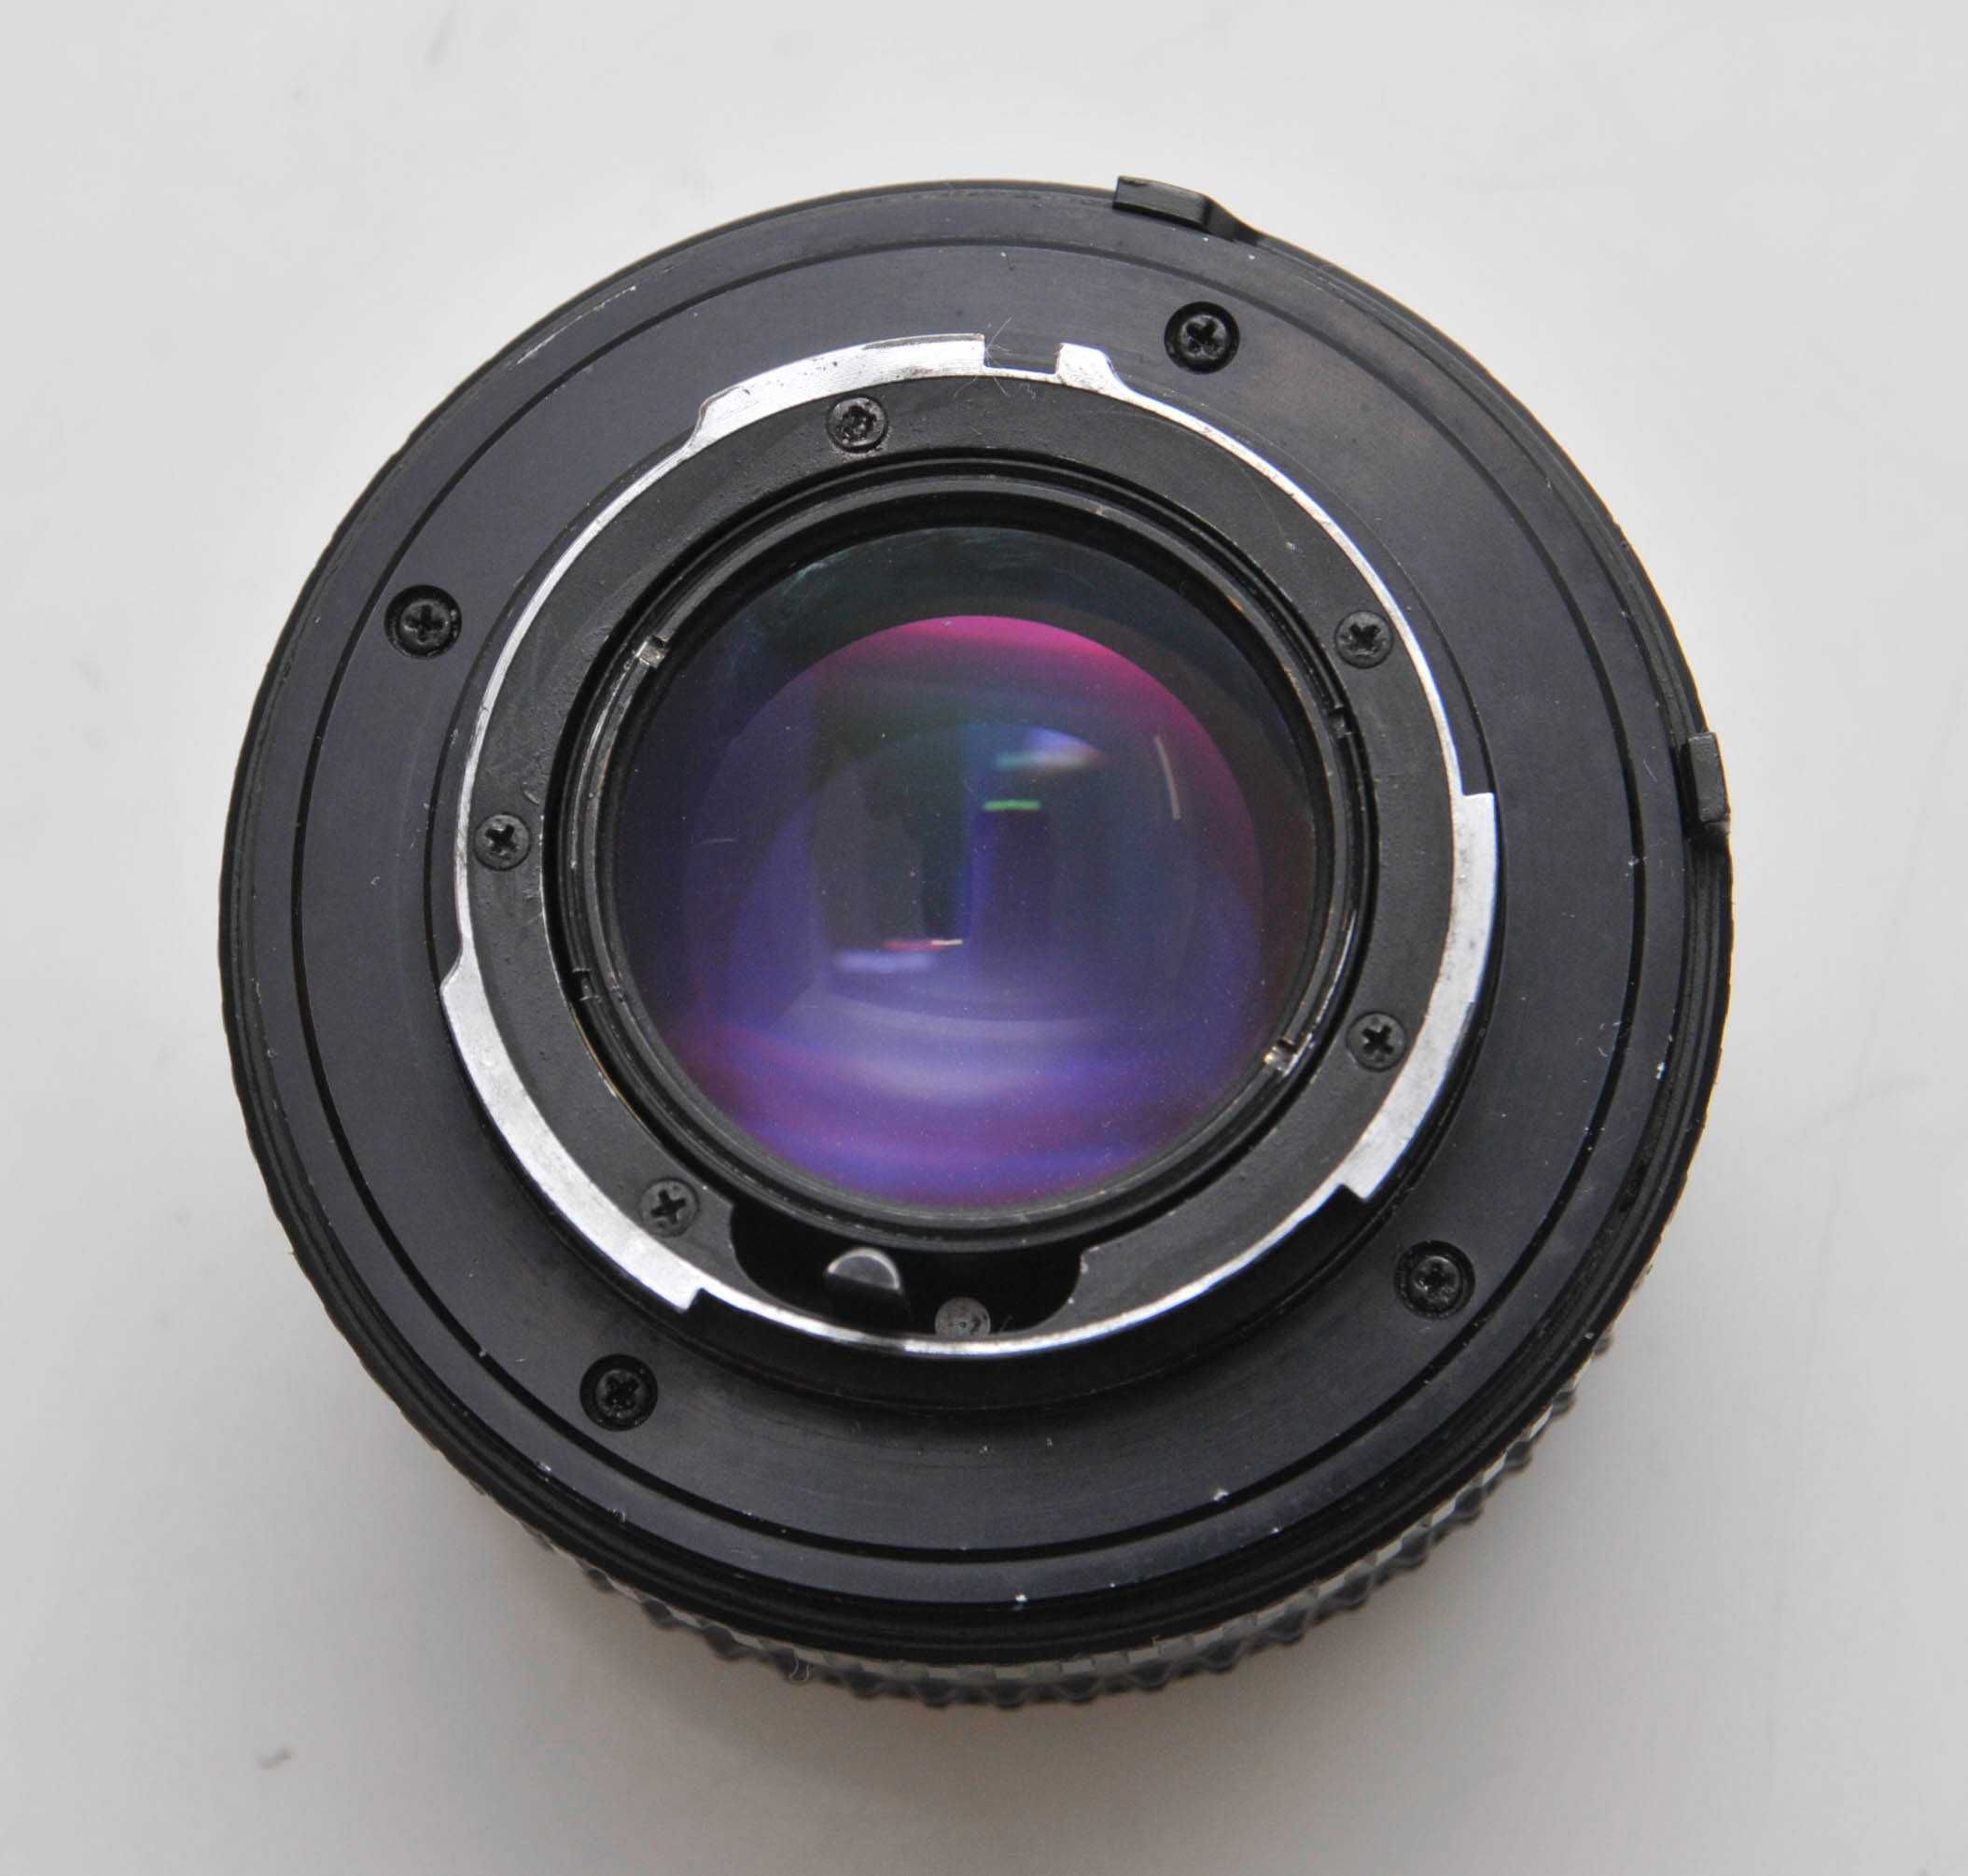 Objectiva Minolta MD Rokkor 50mm f1.4, Vintage, manual focus